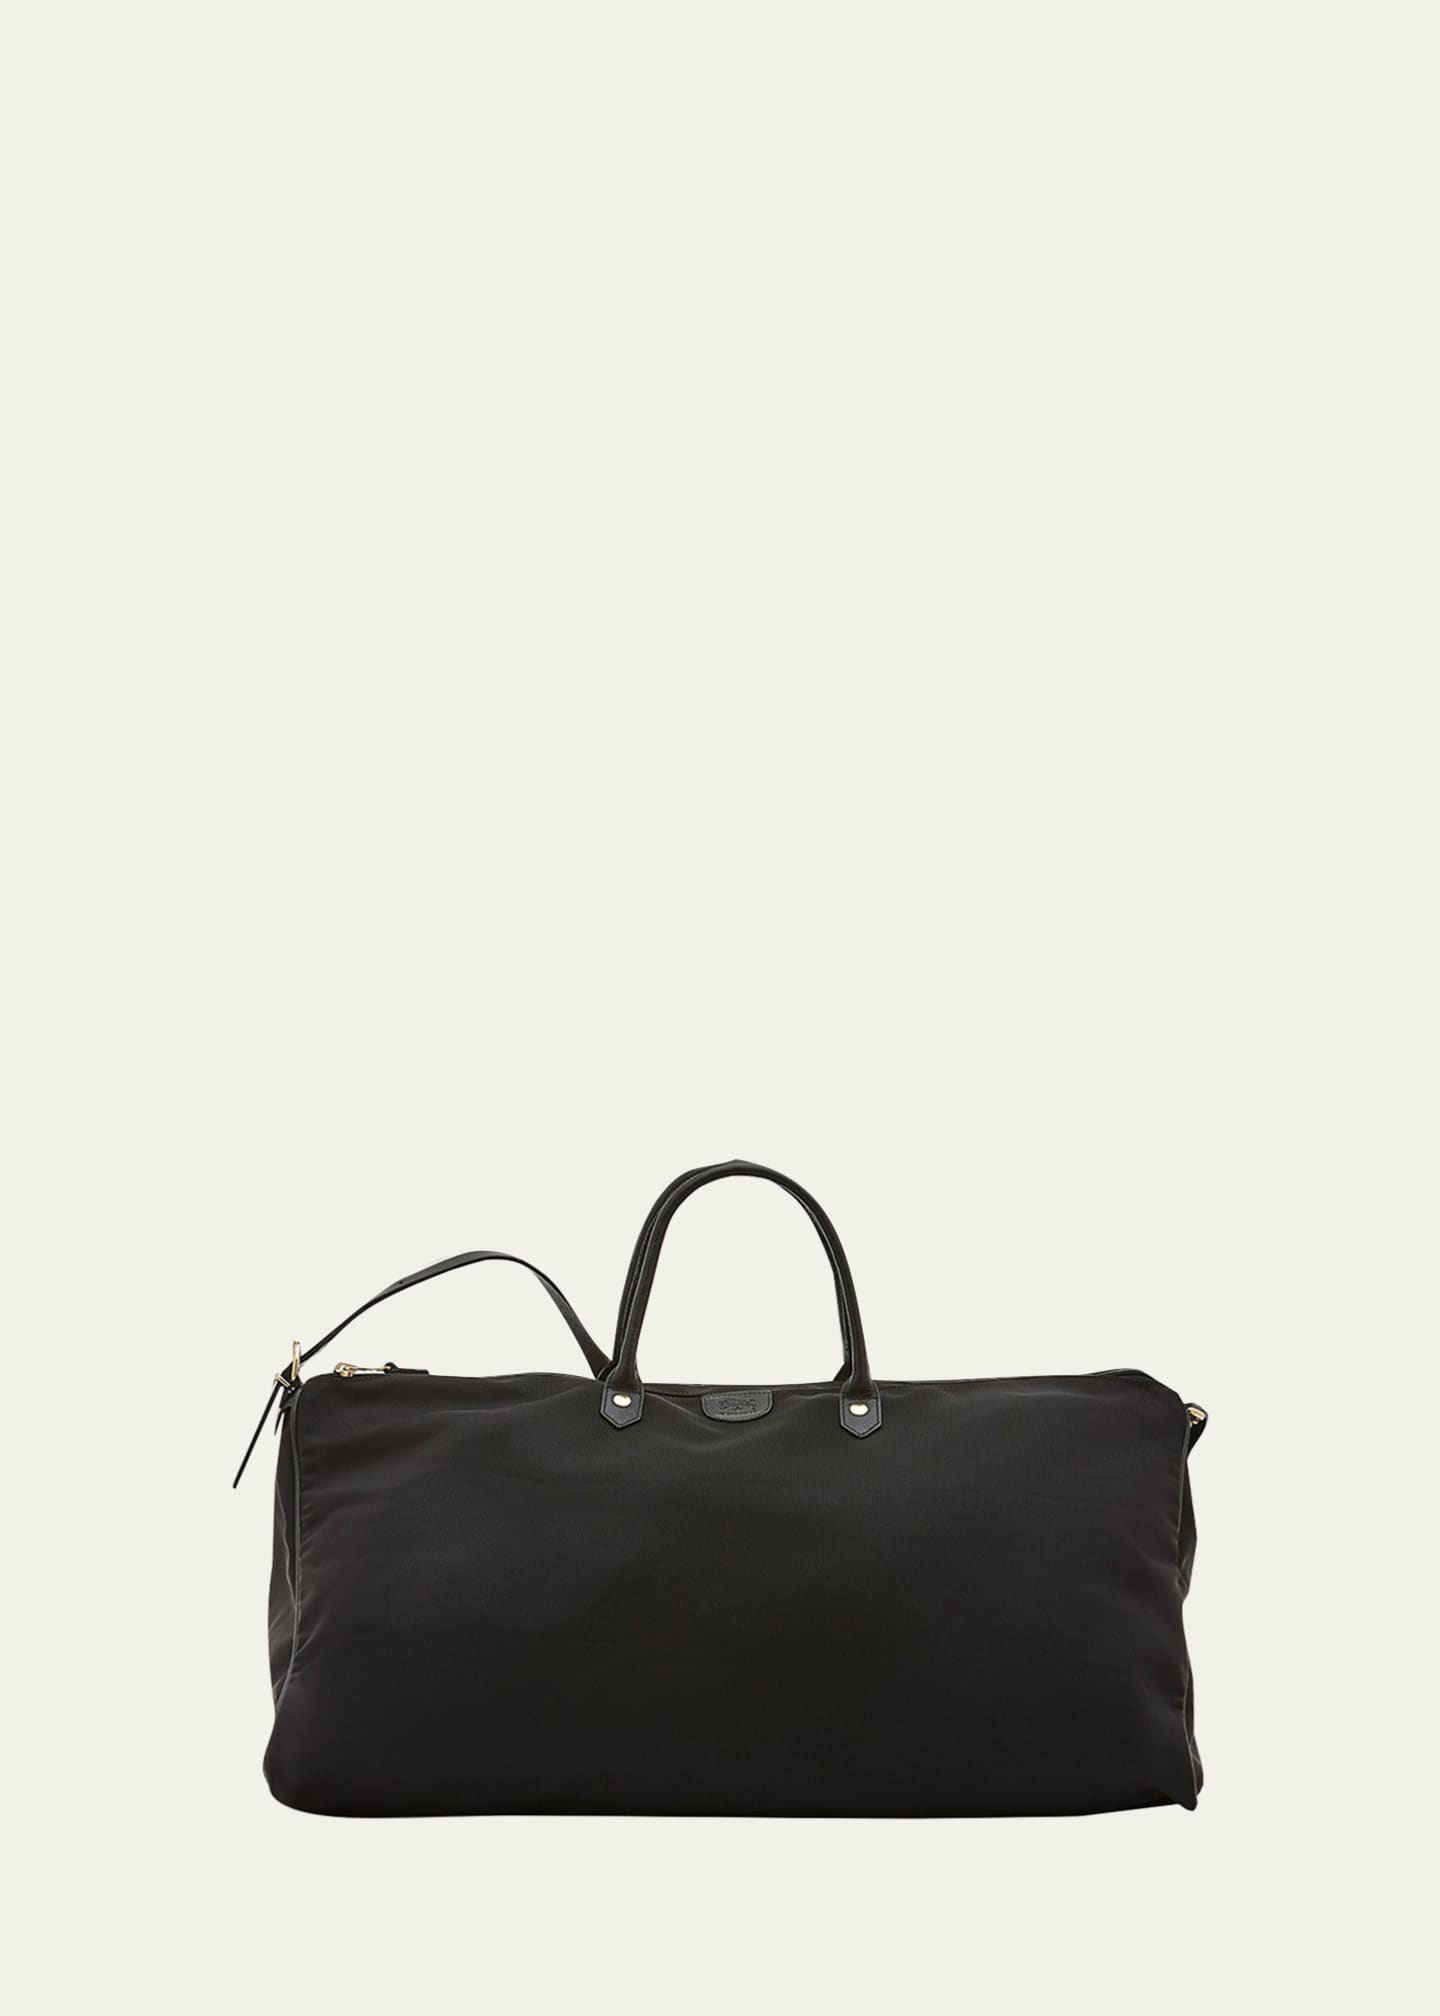 Luxury All Black Leather Travel Weekender Bag